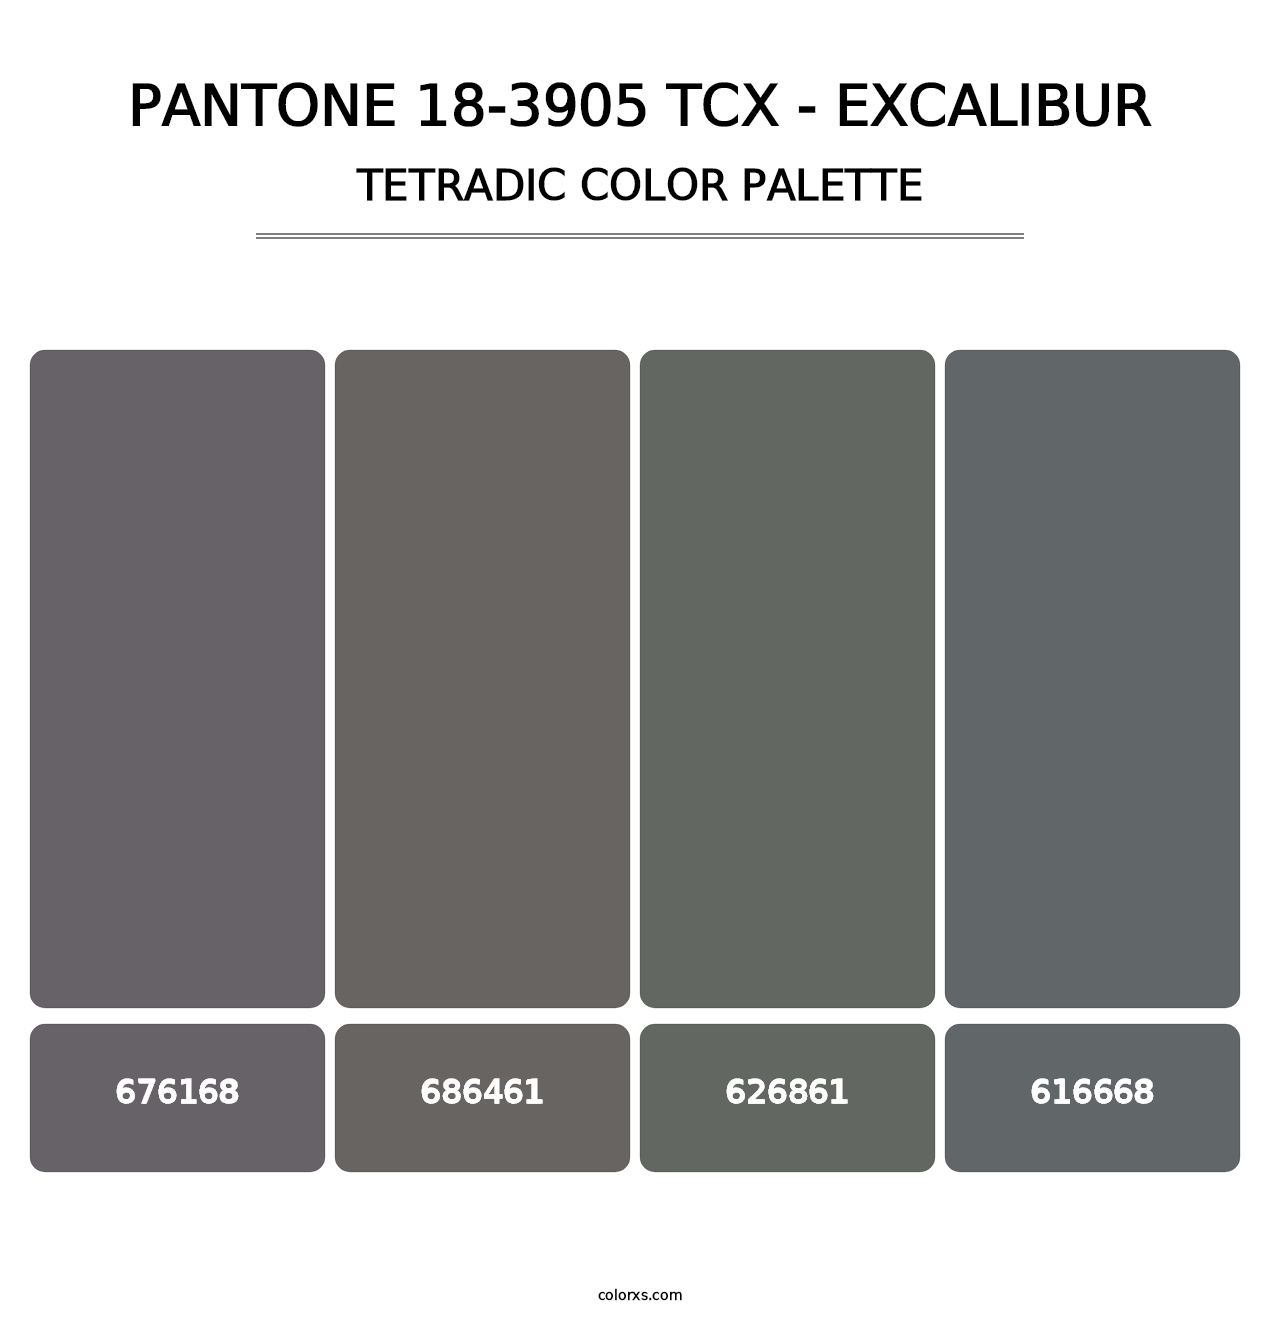 PANTONE 18-3905 TCX - Excalibur - Tetradic Color Palette